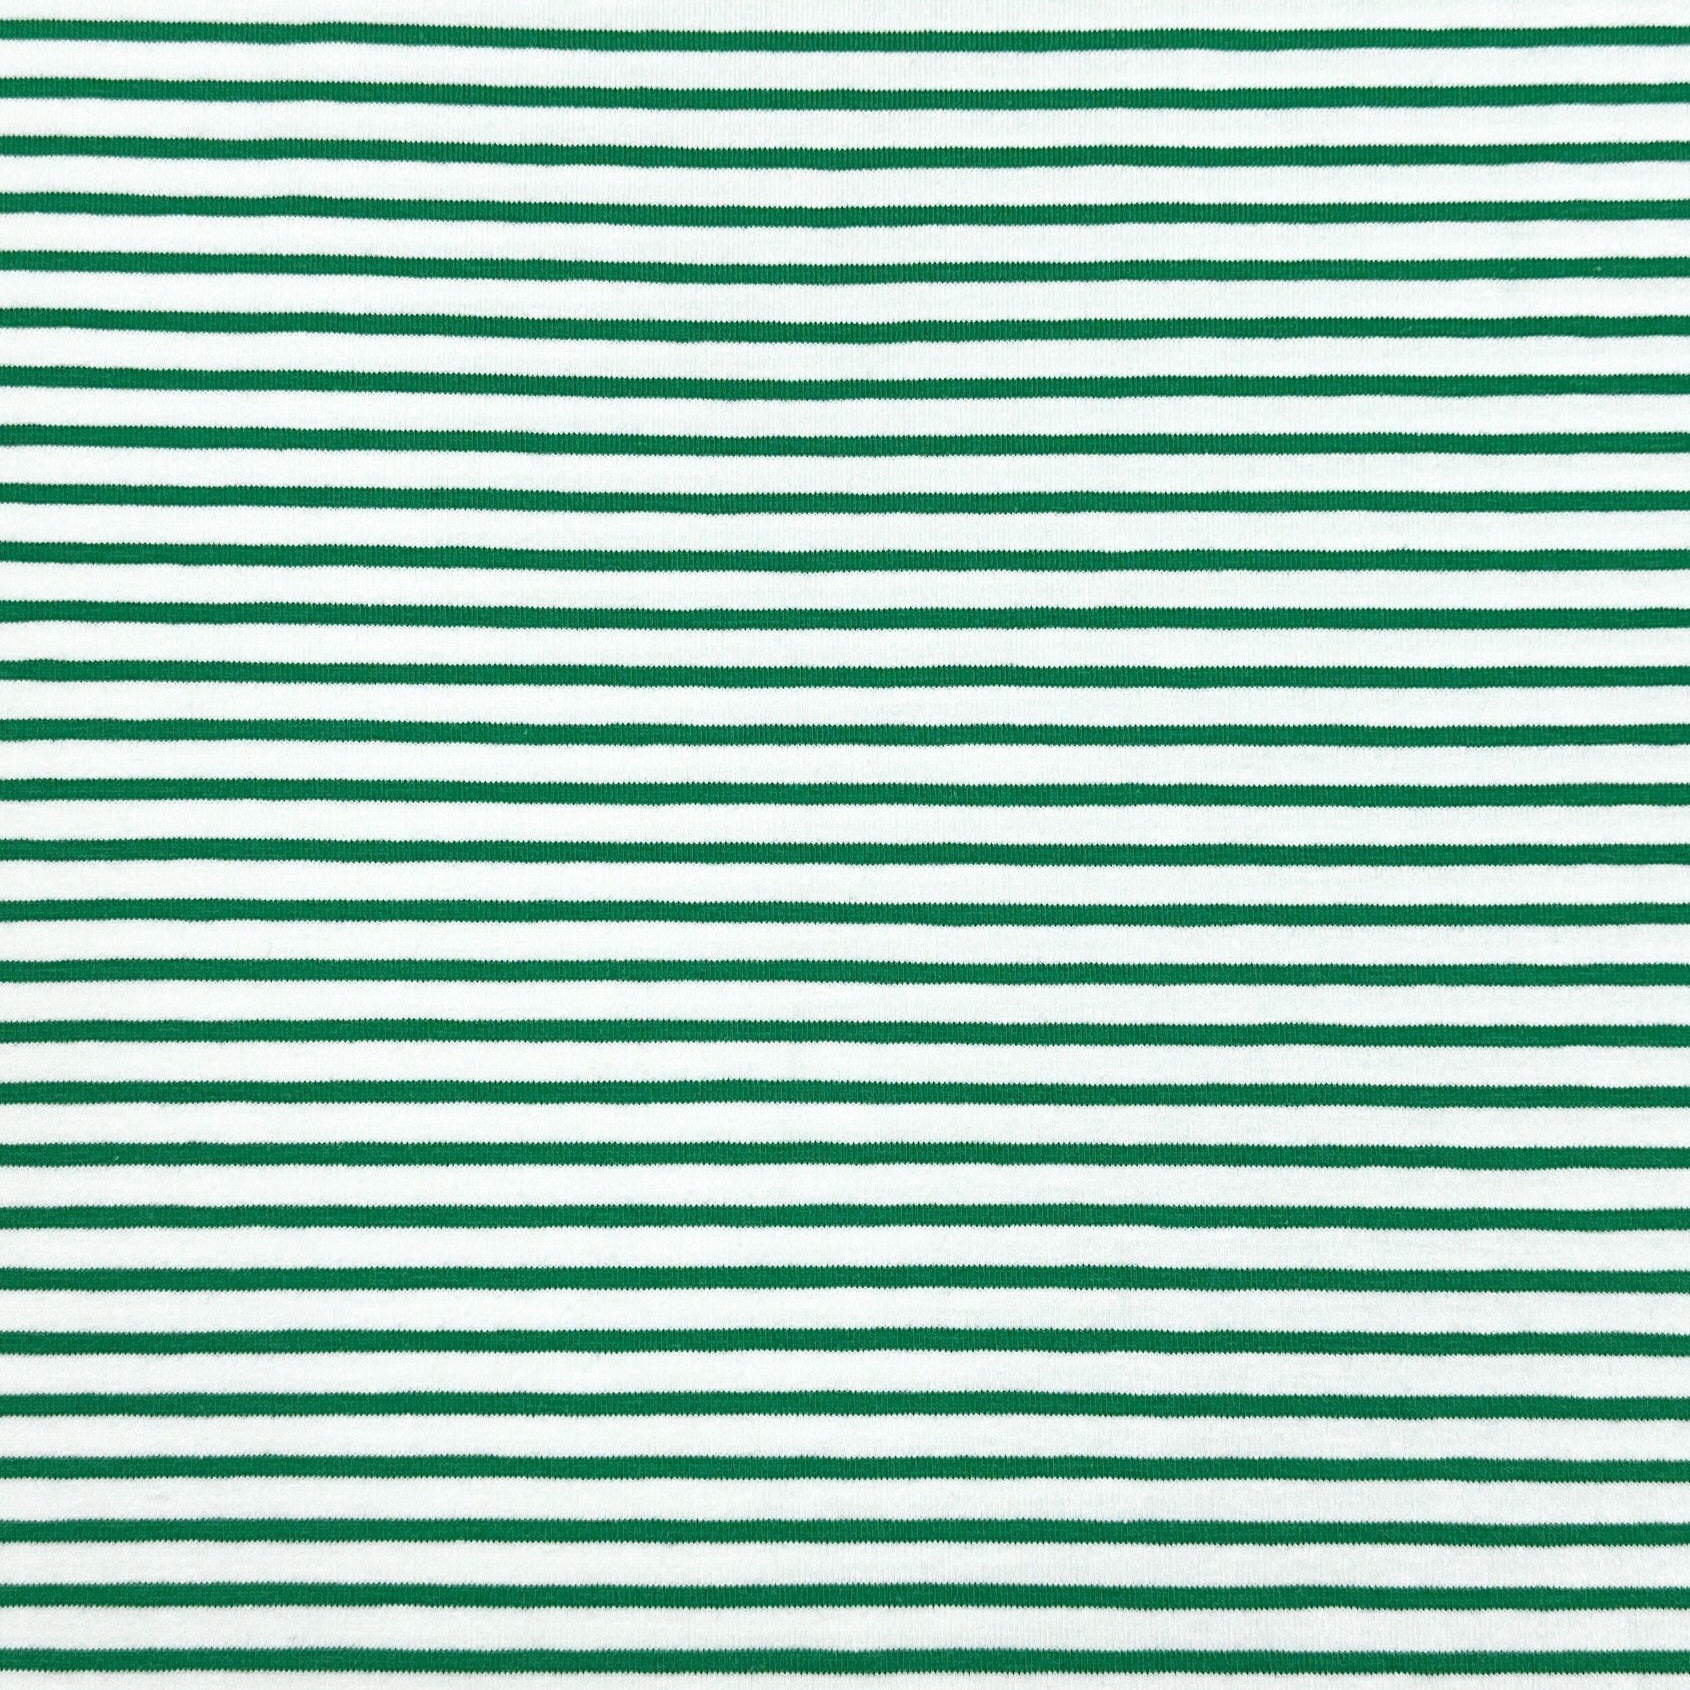 Ligné vert et blanc 5 mm - Jersey ligné